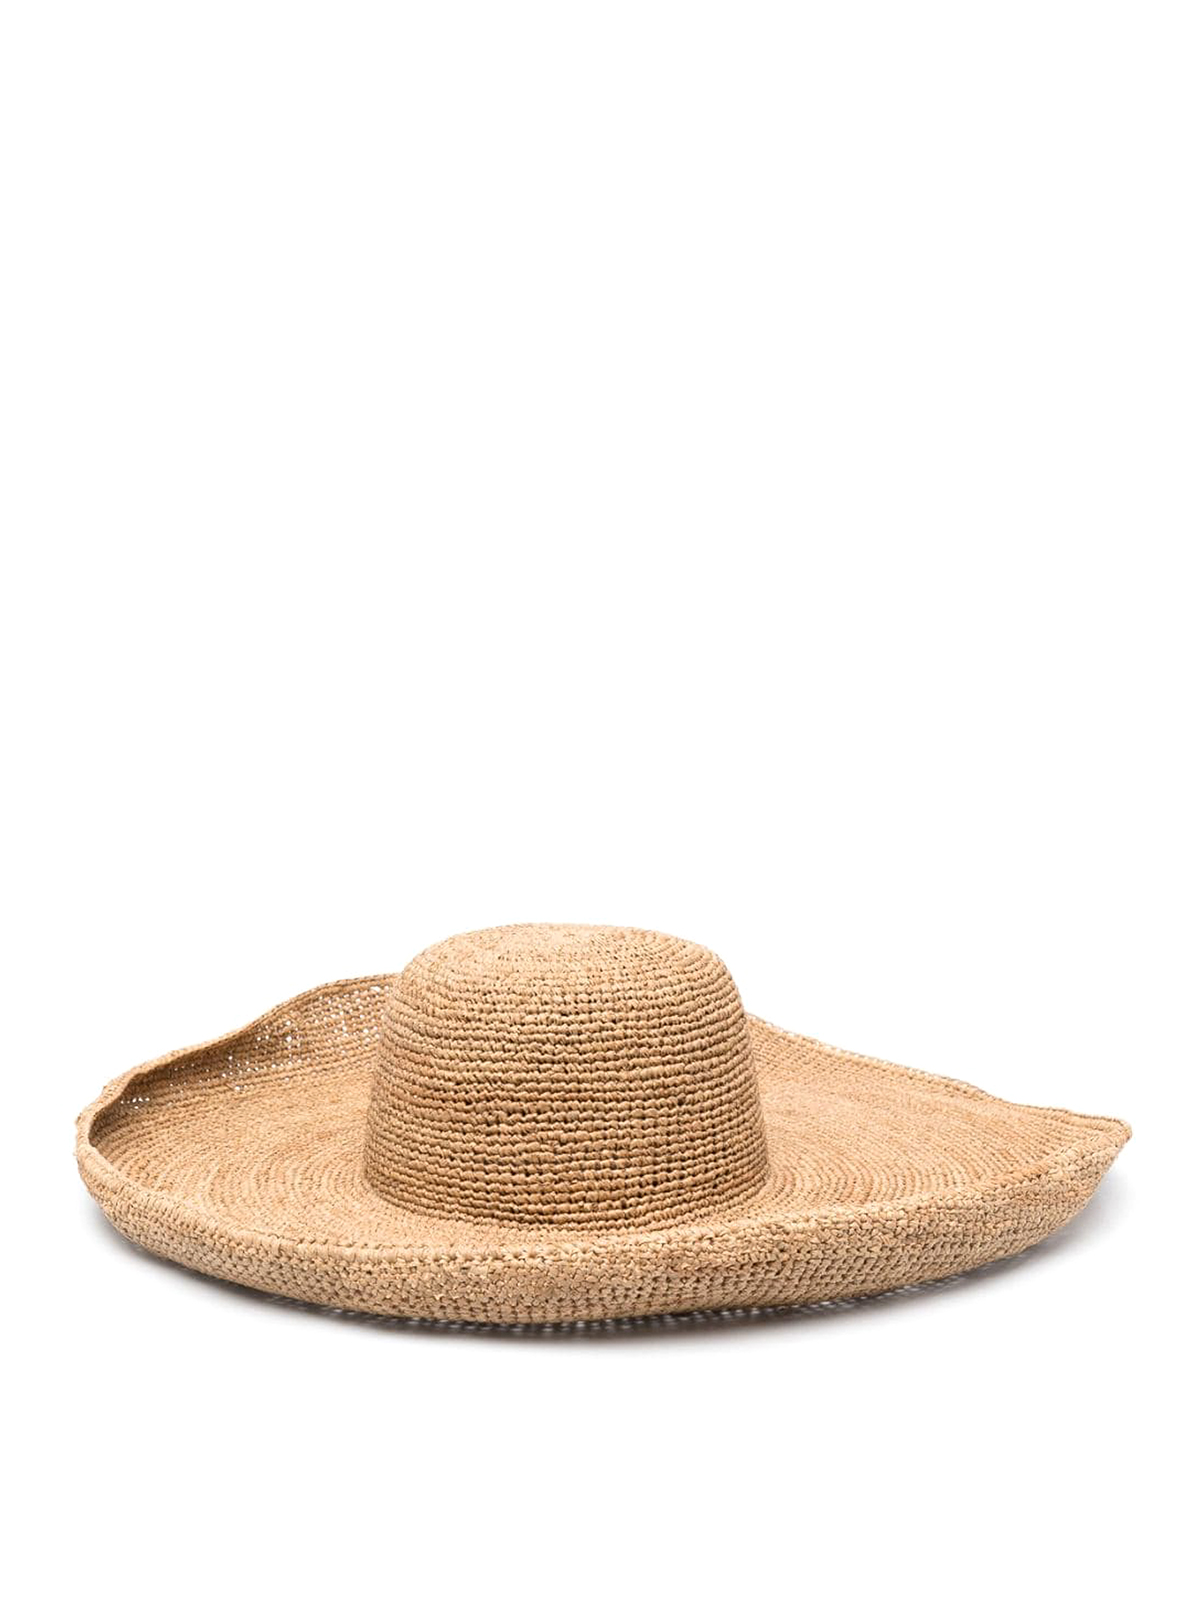 Ibeliv Izy Voluminous Hat In Brown